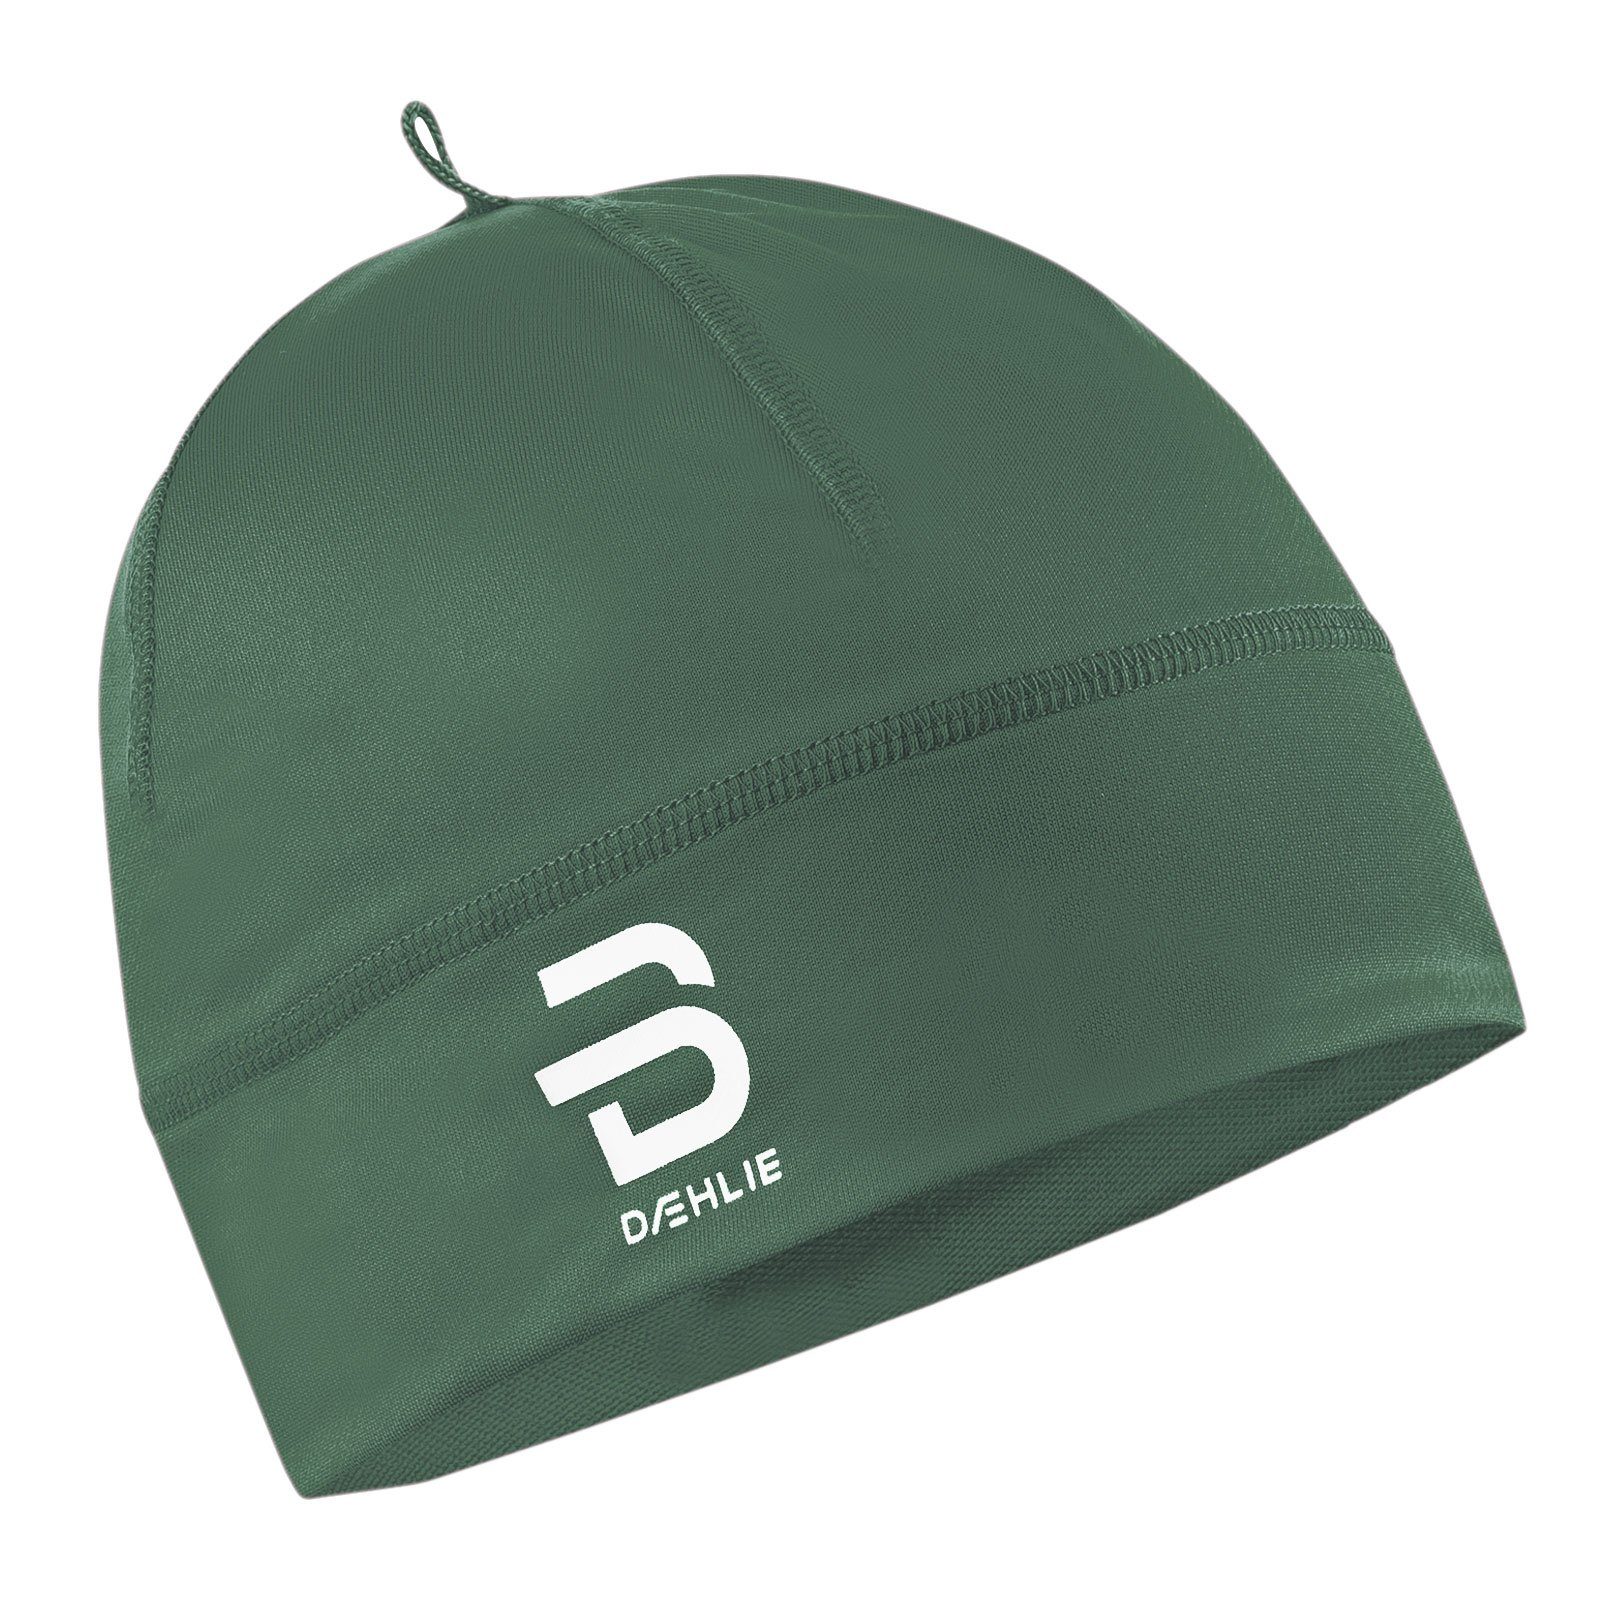 DAEHLIE Skimütze Hat Polyknit mit dekorativem Logo grün